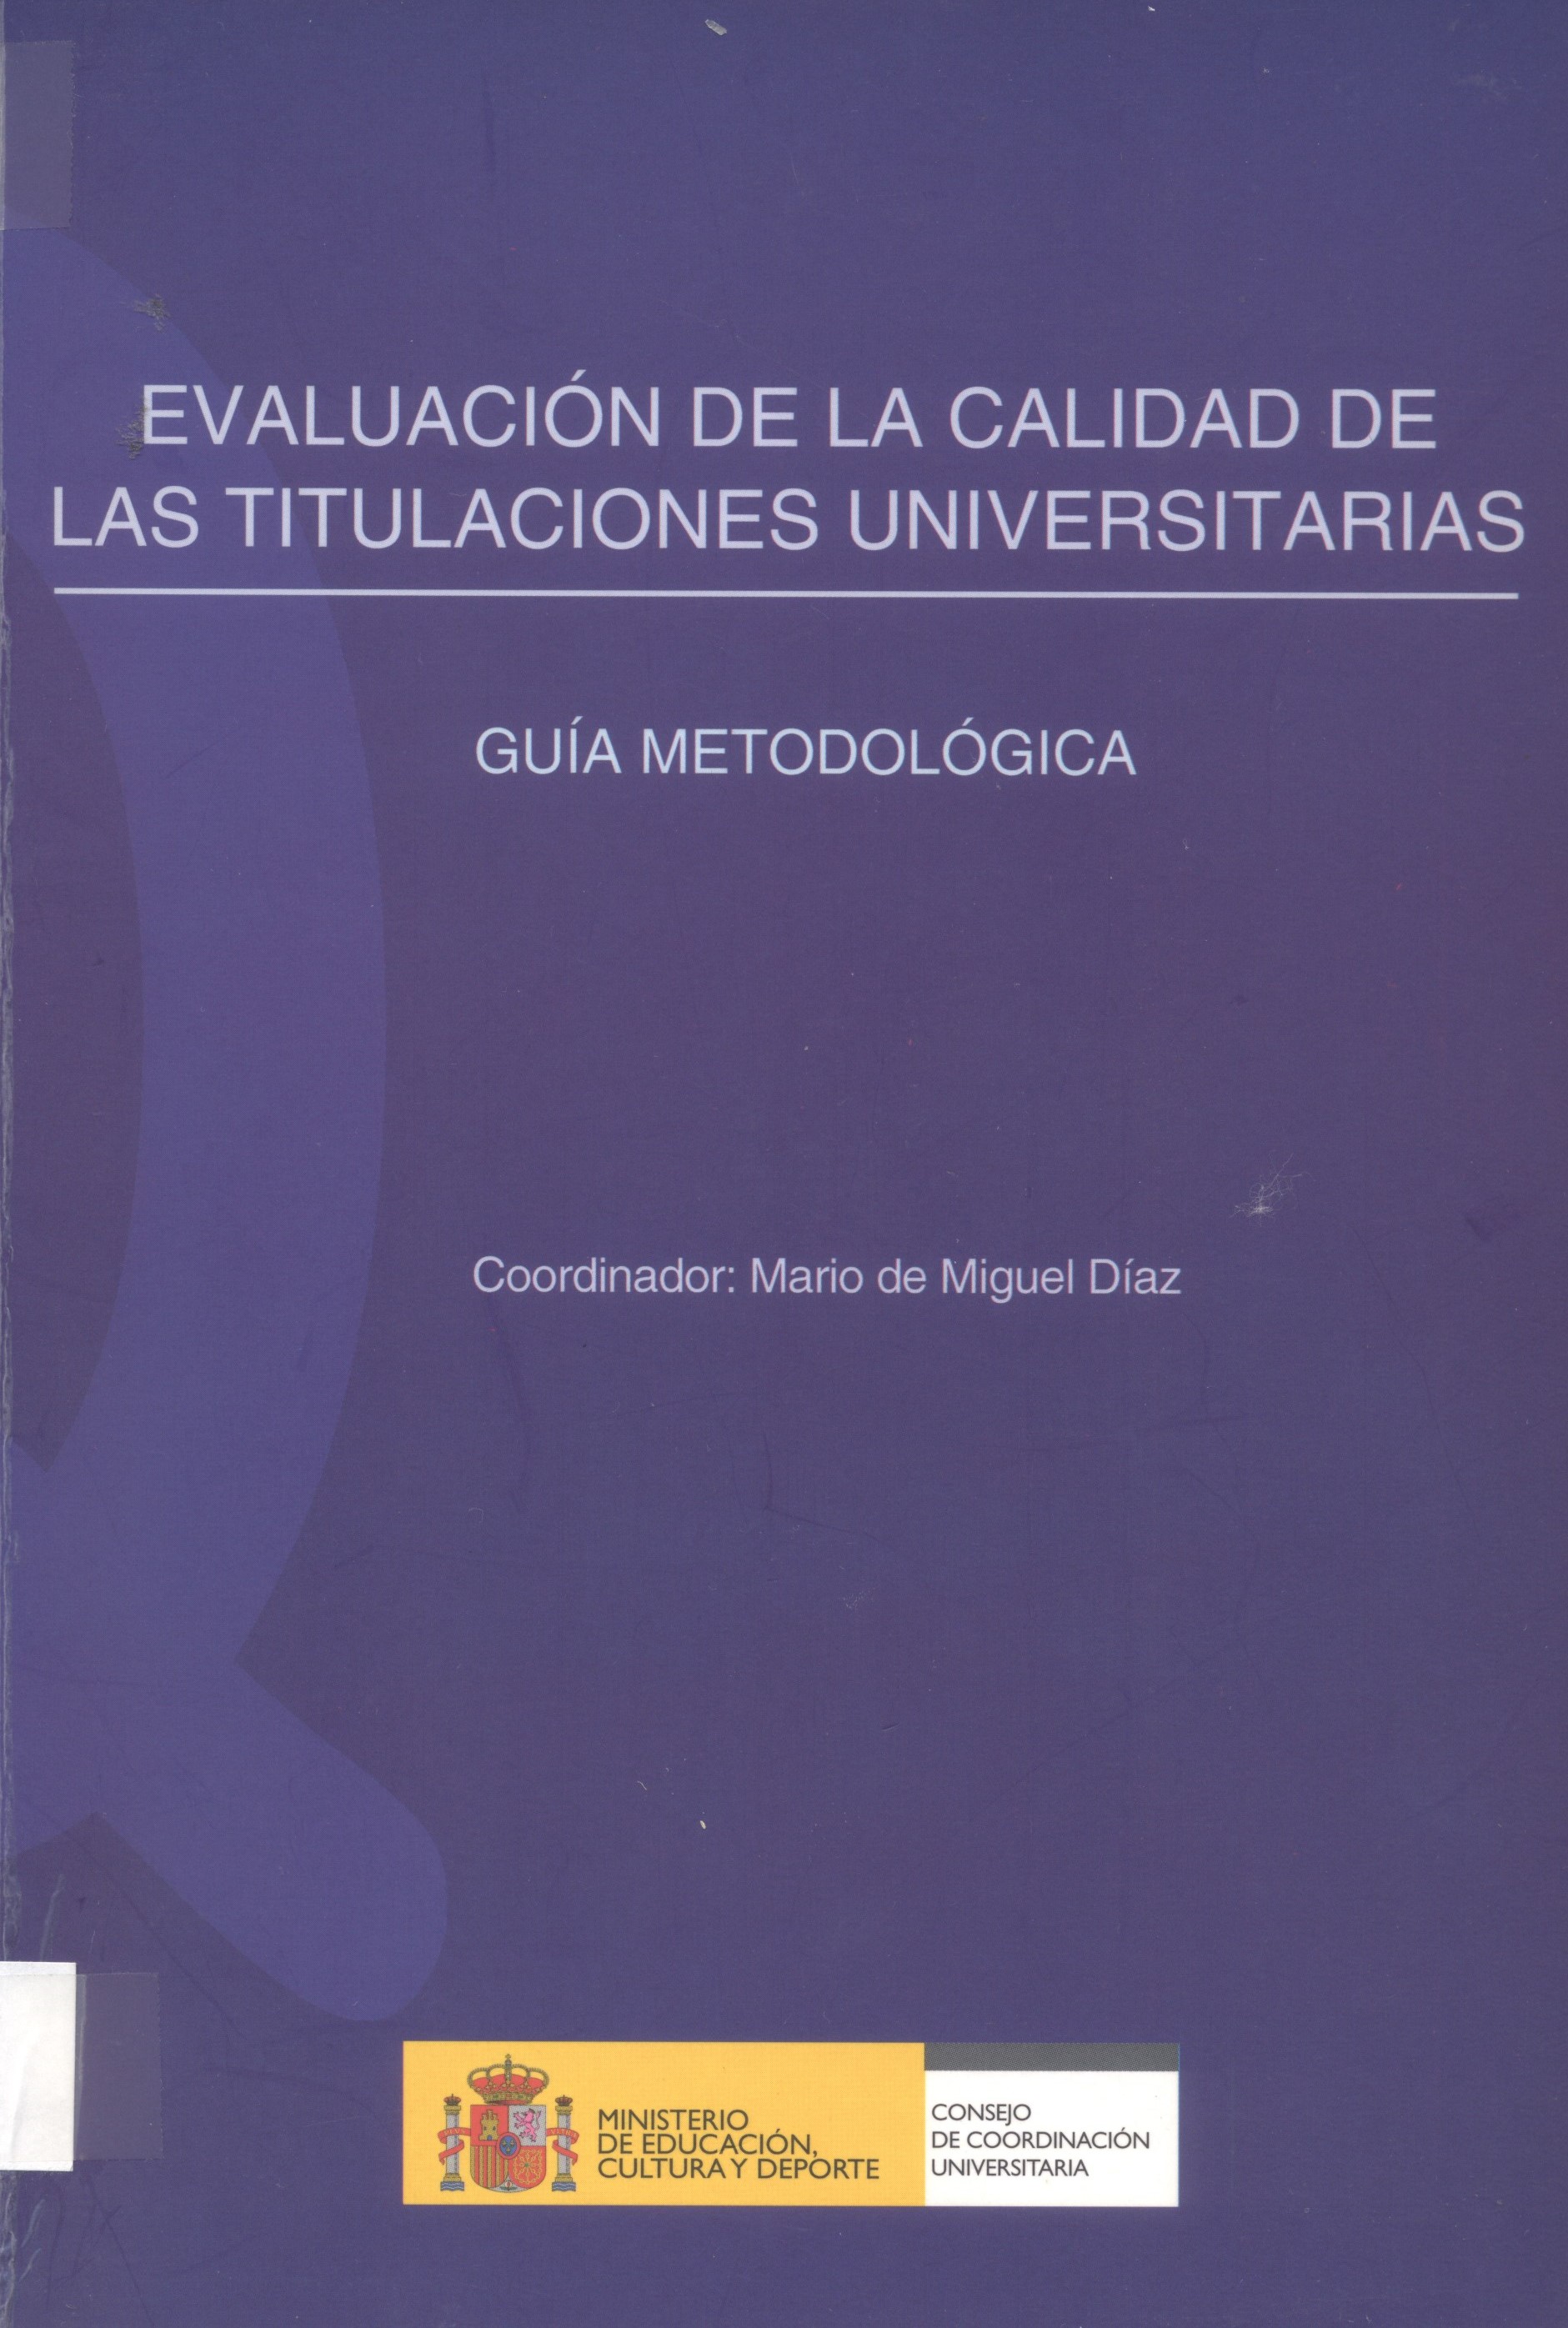 Imagen de portada del libro Evaluación de la calidad de las titulaciones universitarias